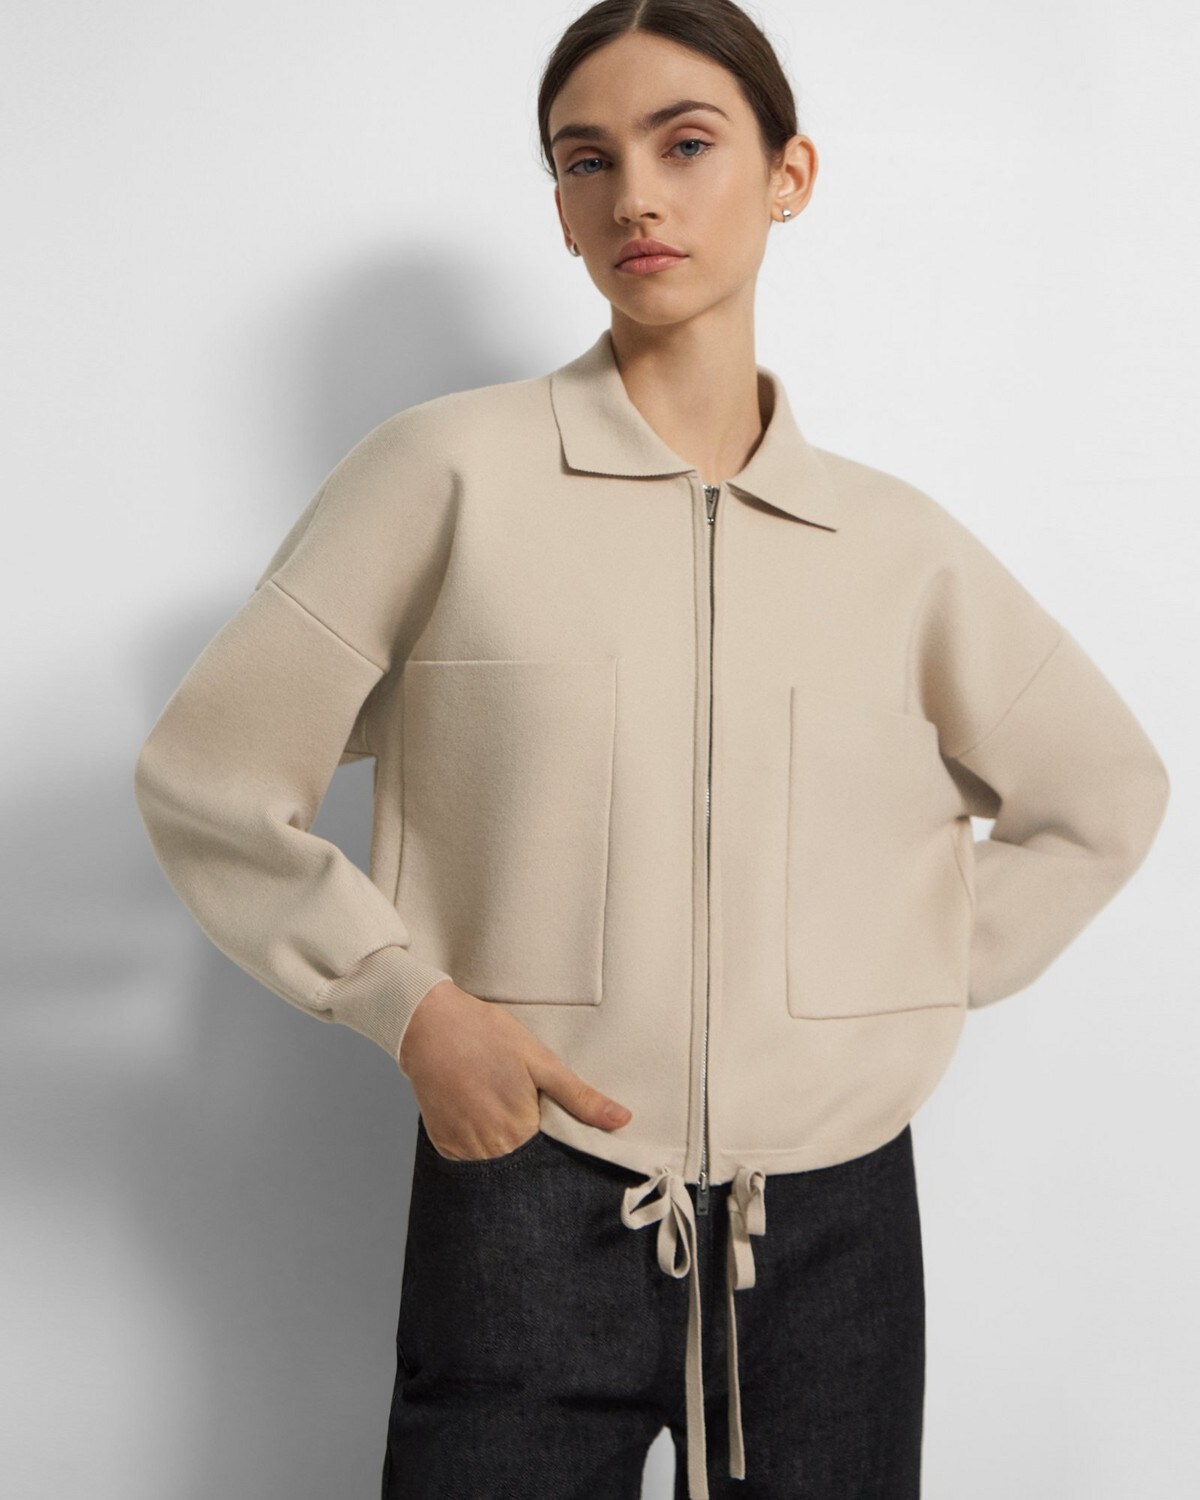 Cropped Zip Jacket in Fine Merino Wool